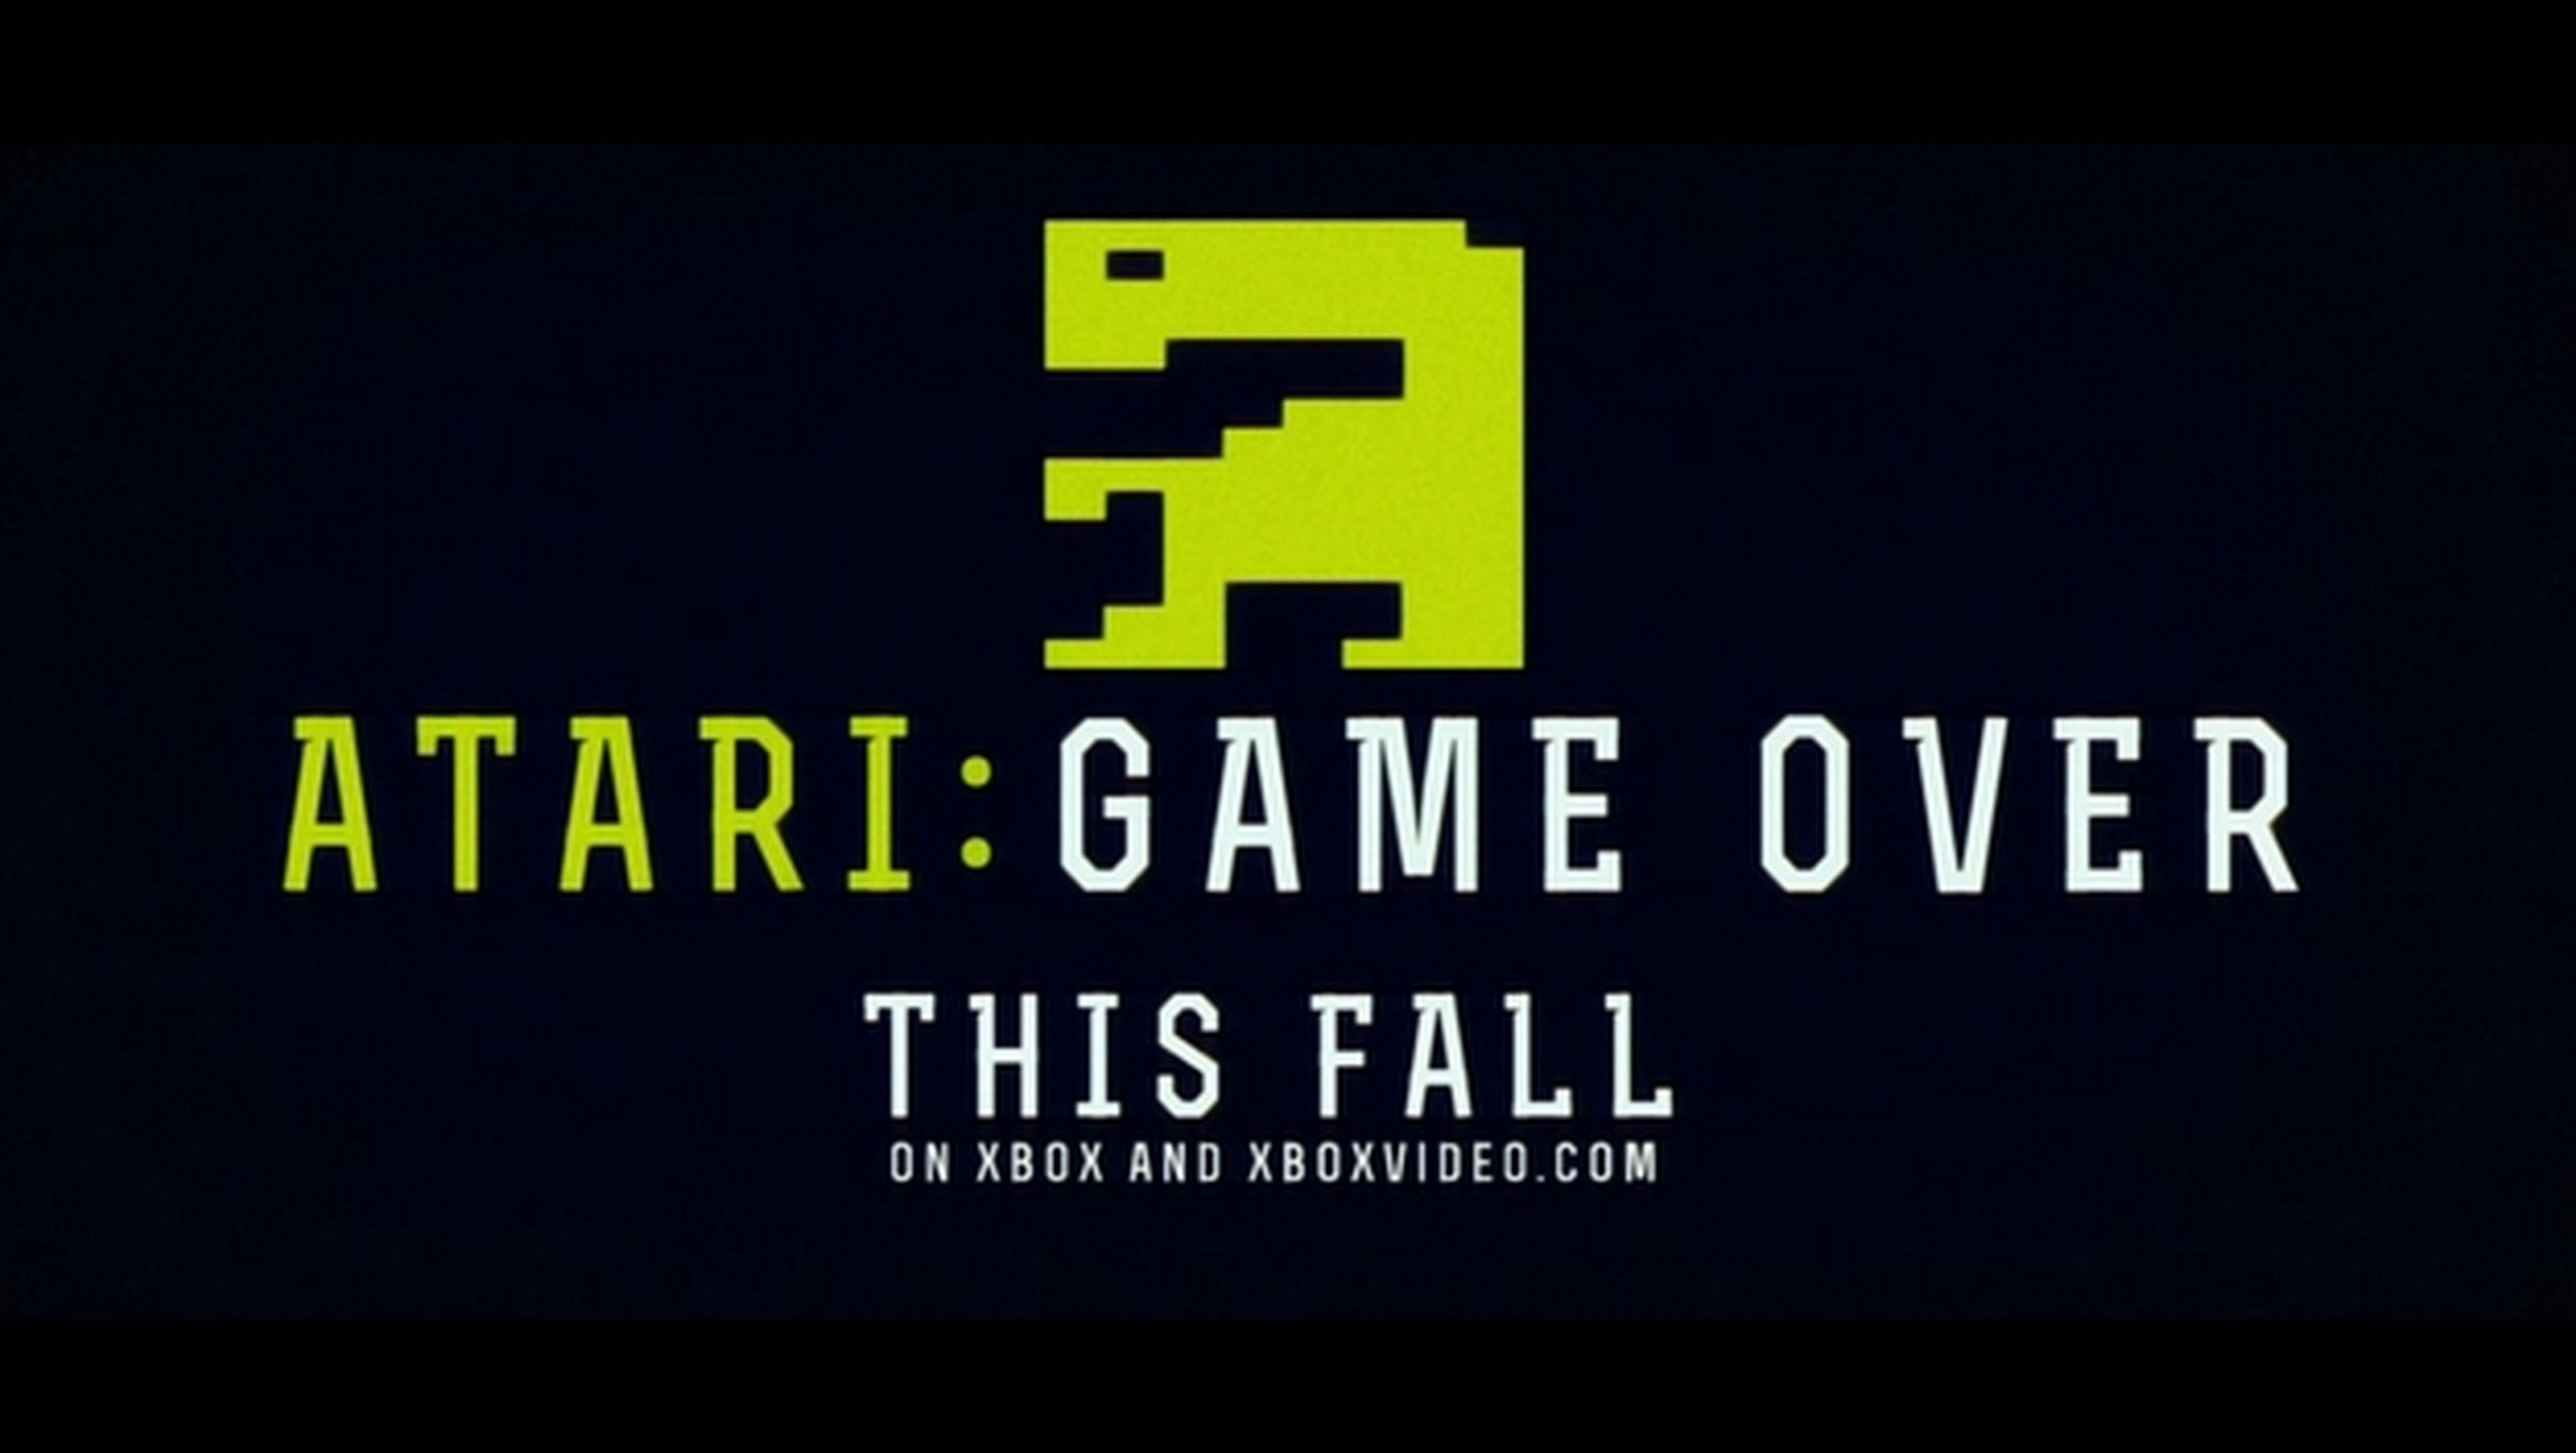 Disfruta gratis del documental Atari: Game Over, sobre la caída de Atari y el enterramiento de juegos de E.T., en PC o Xbox.